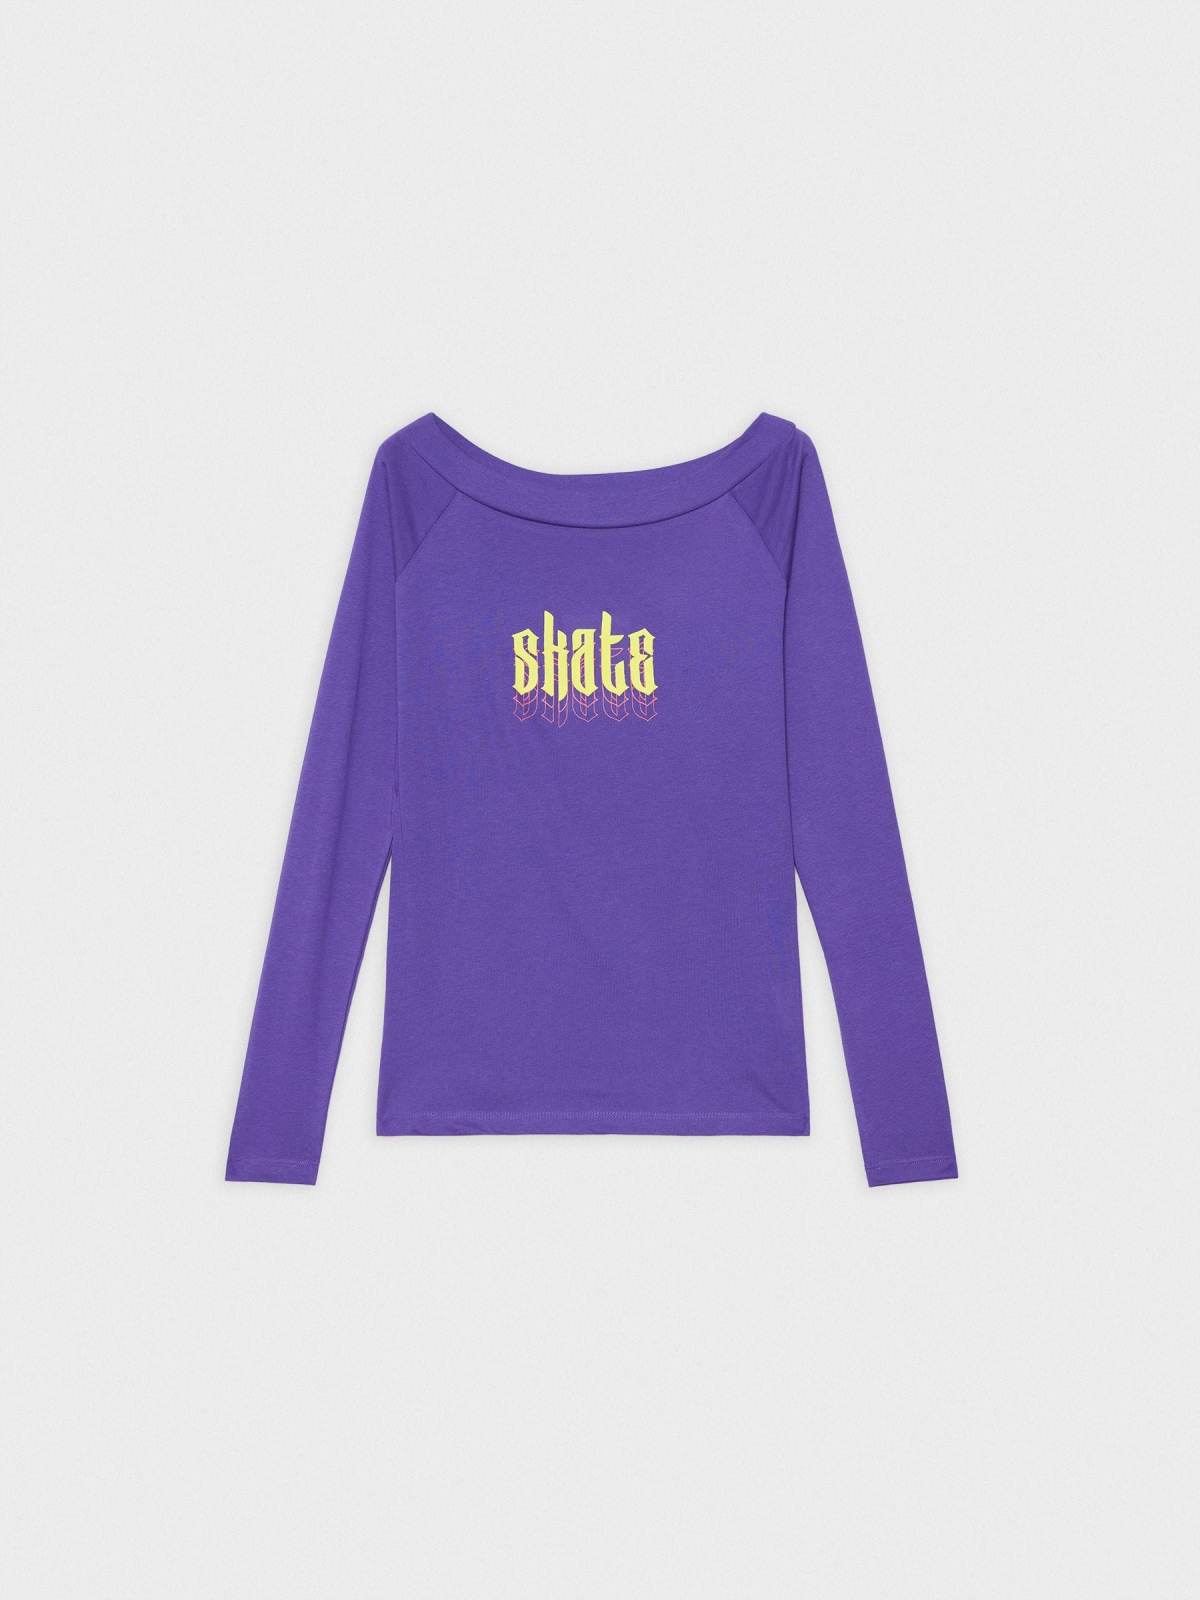  Camiseta barco Skate violeta